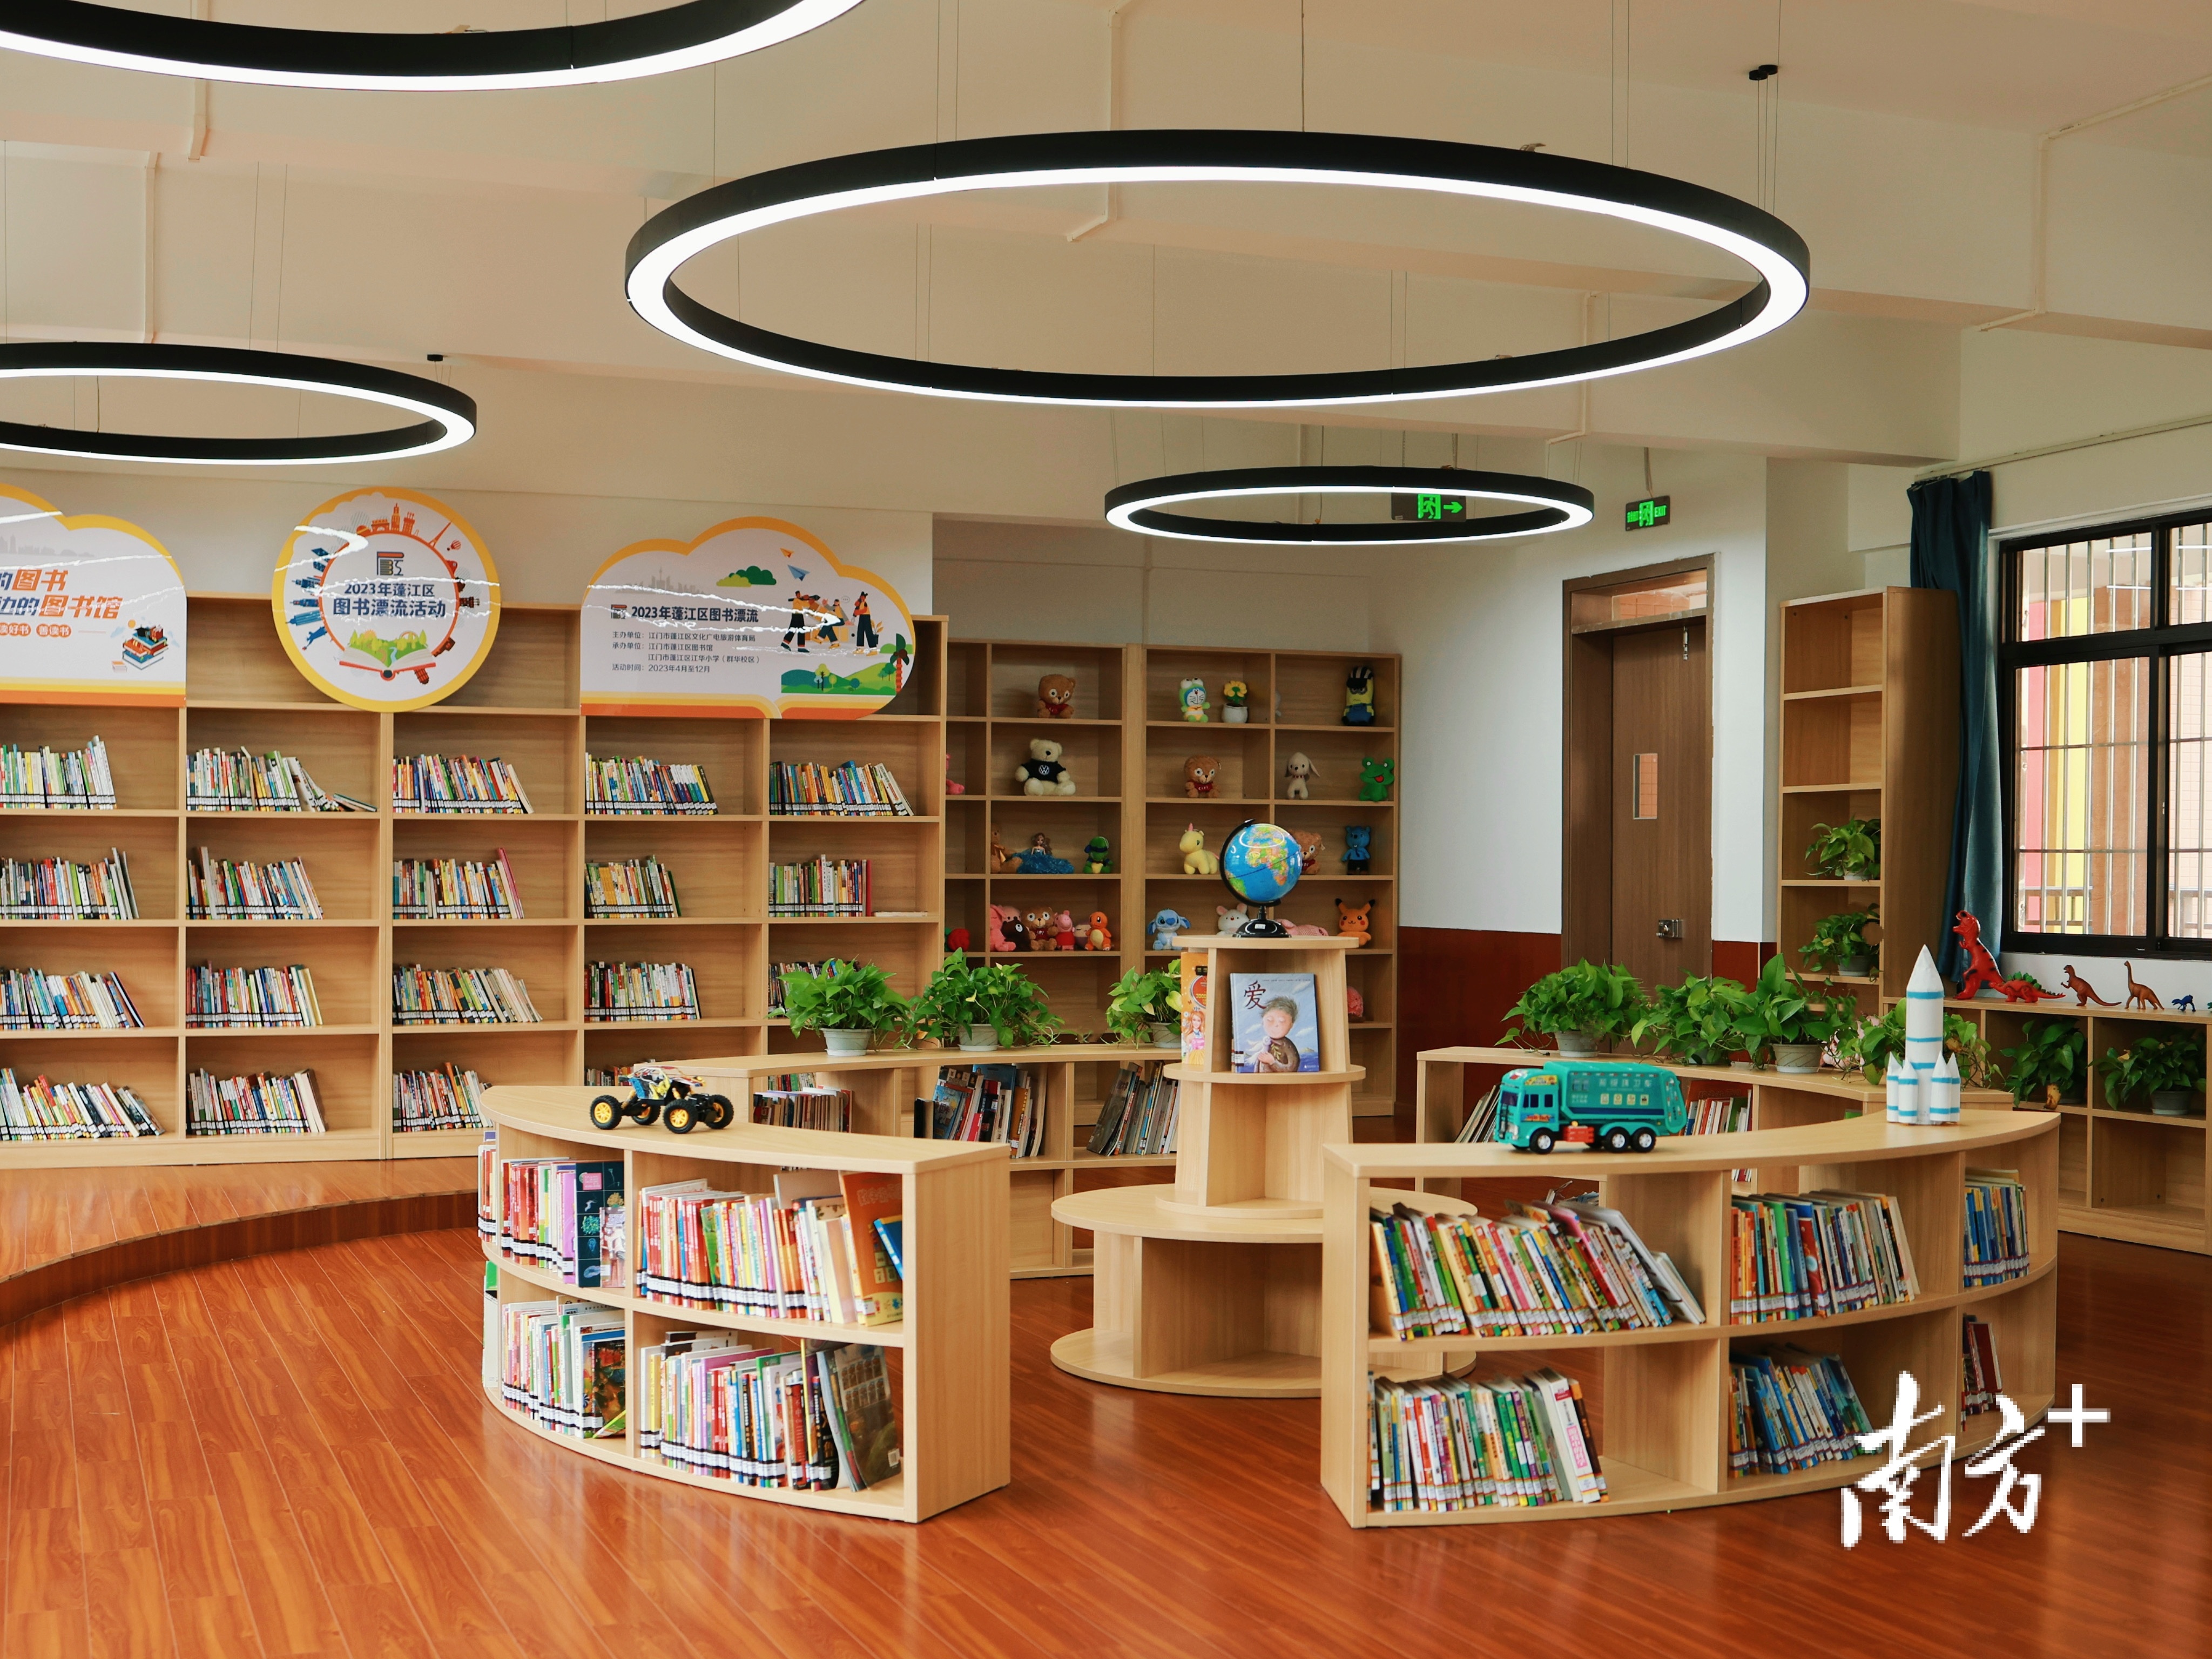 江华小学群华校区拥有江门首座300平方米跃进式图书馆。